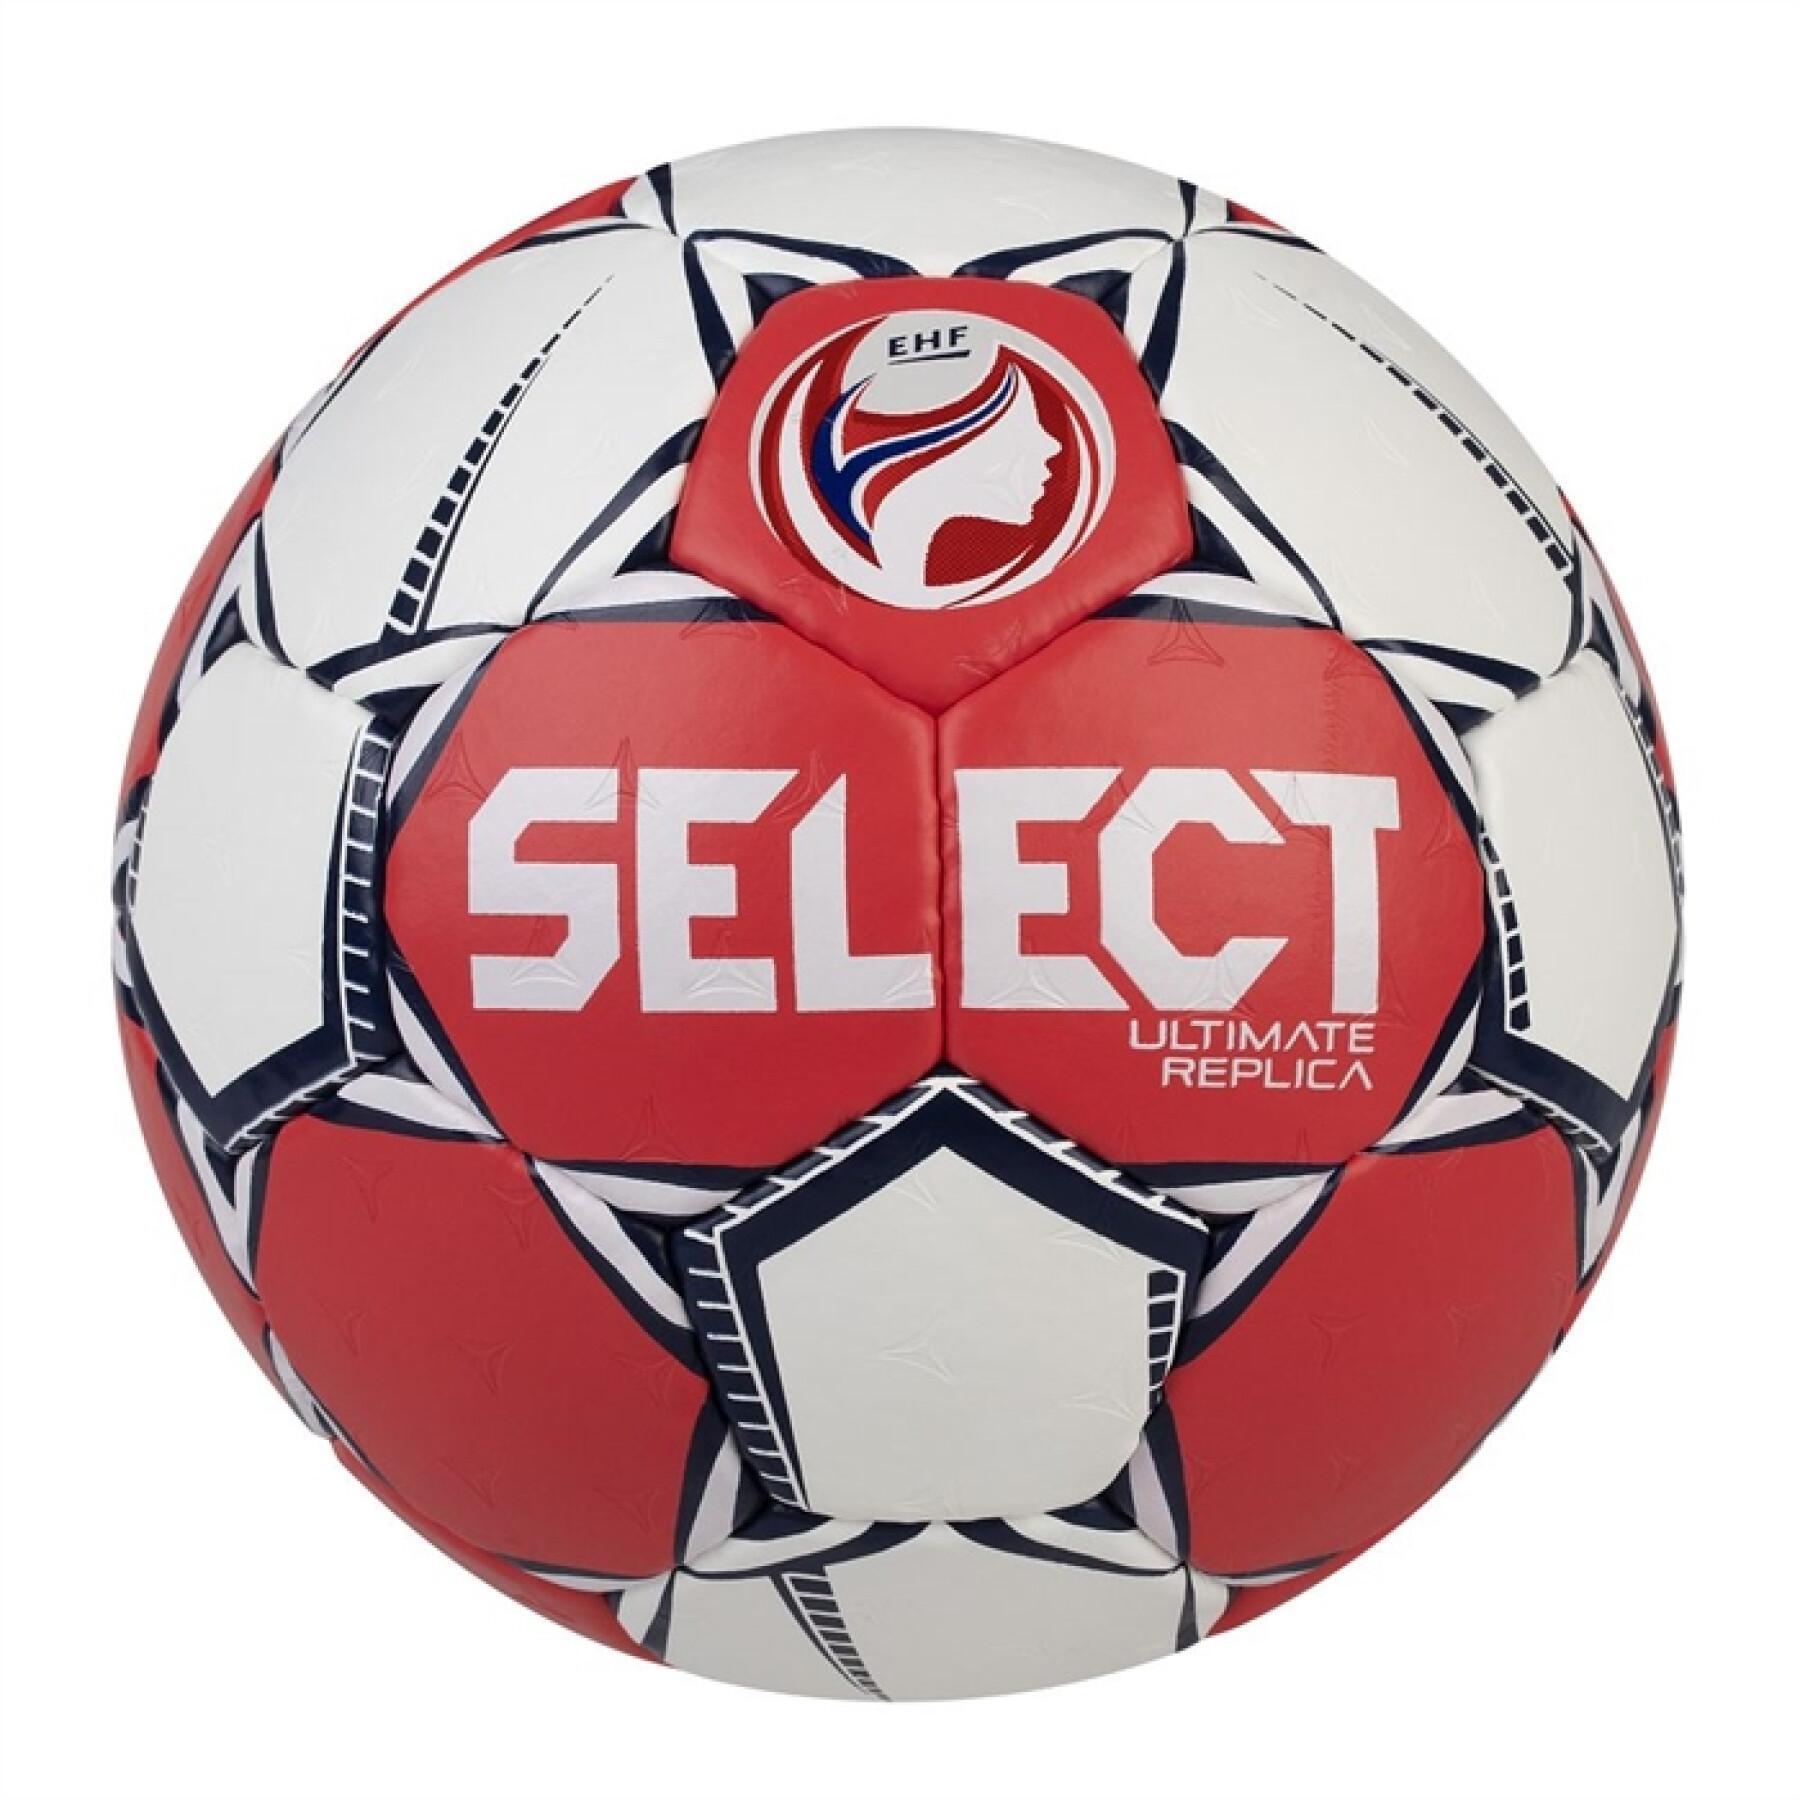 Andebol Select Ultimate Replica EHF Euro 2020